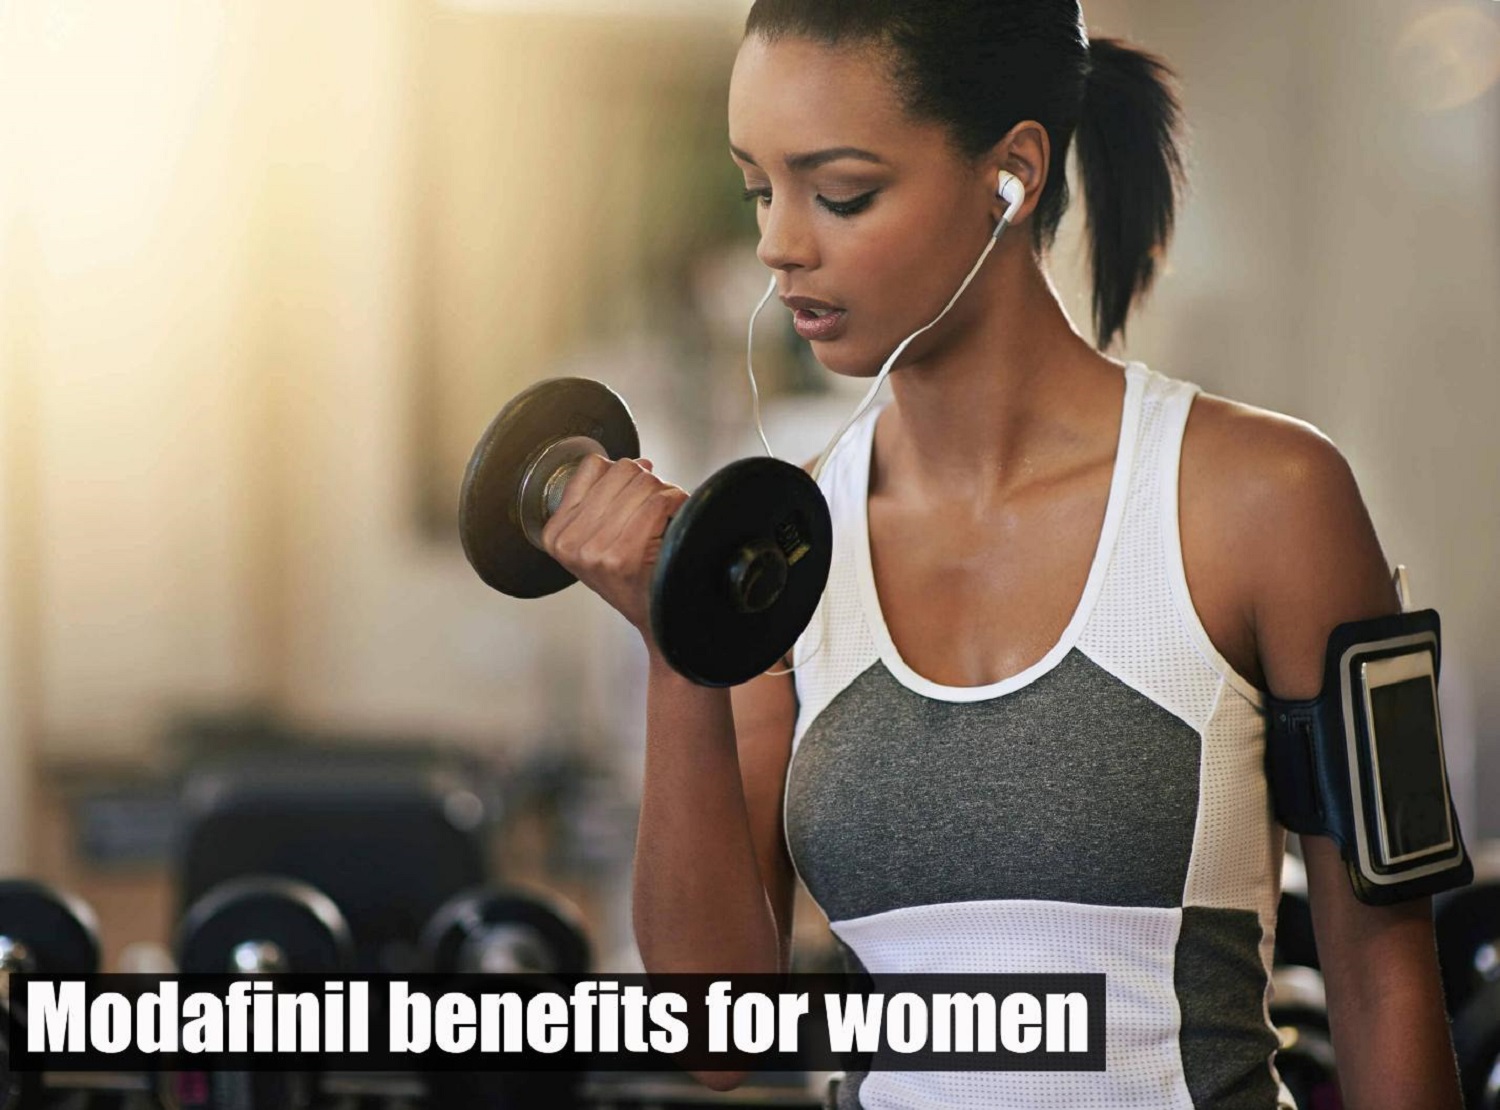 Modafinil benefits for women